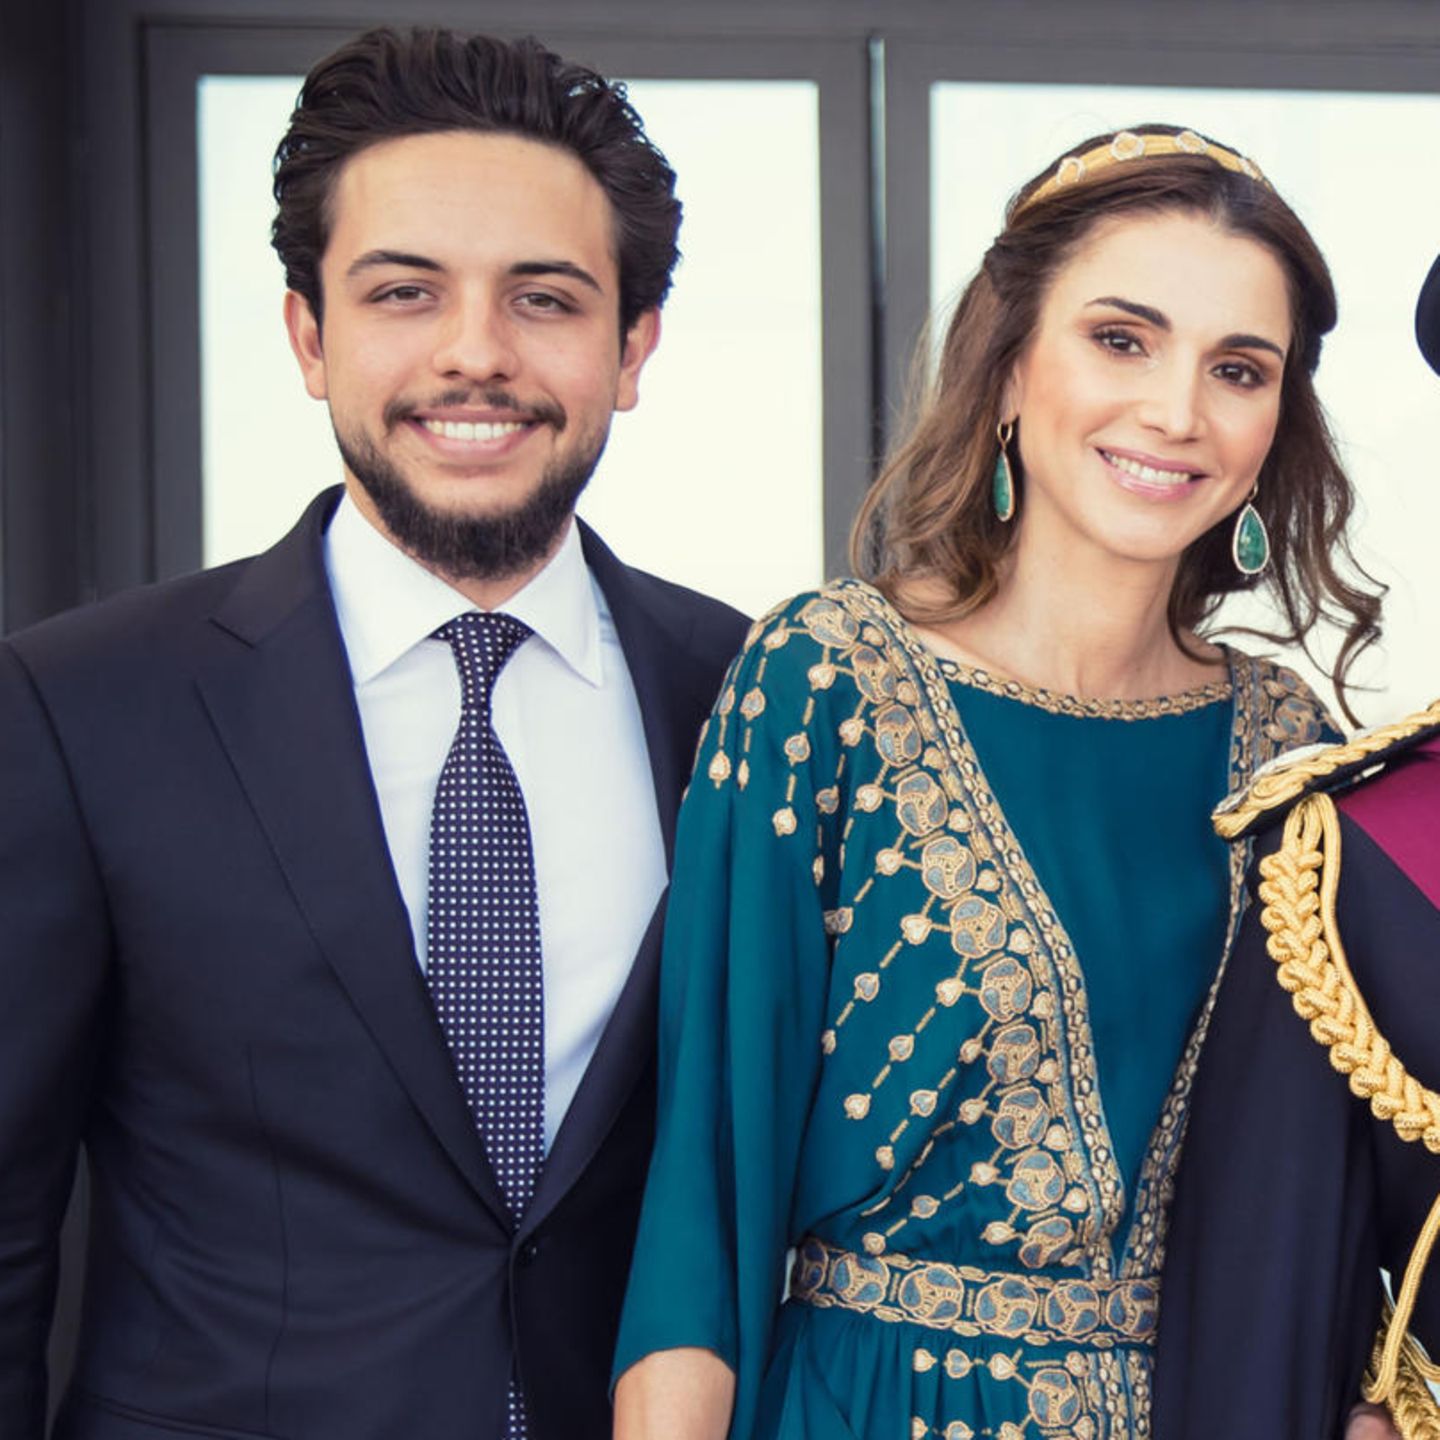 Prinz Hussein ist der älteste Sohn von König Abdullah und Königin Rania von Jordanien und wird eines tages den Thron von seinem Vater erben.Zusätzliches Goodie für seine Zukünftige: Mama Rania gilt als die stilsicherste Royal weltweit - und vielleicht darf sich ihre zukünftige Schwiegertochter ja das ein oder andere Mal an ihrem Kleiderschrank bedienen?